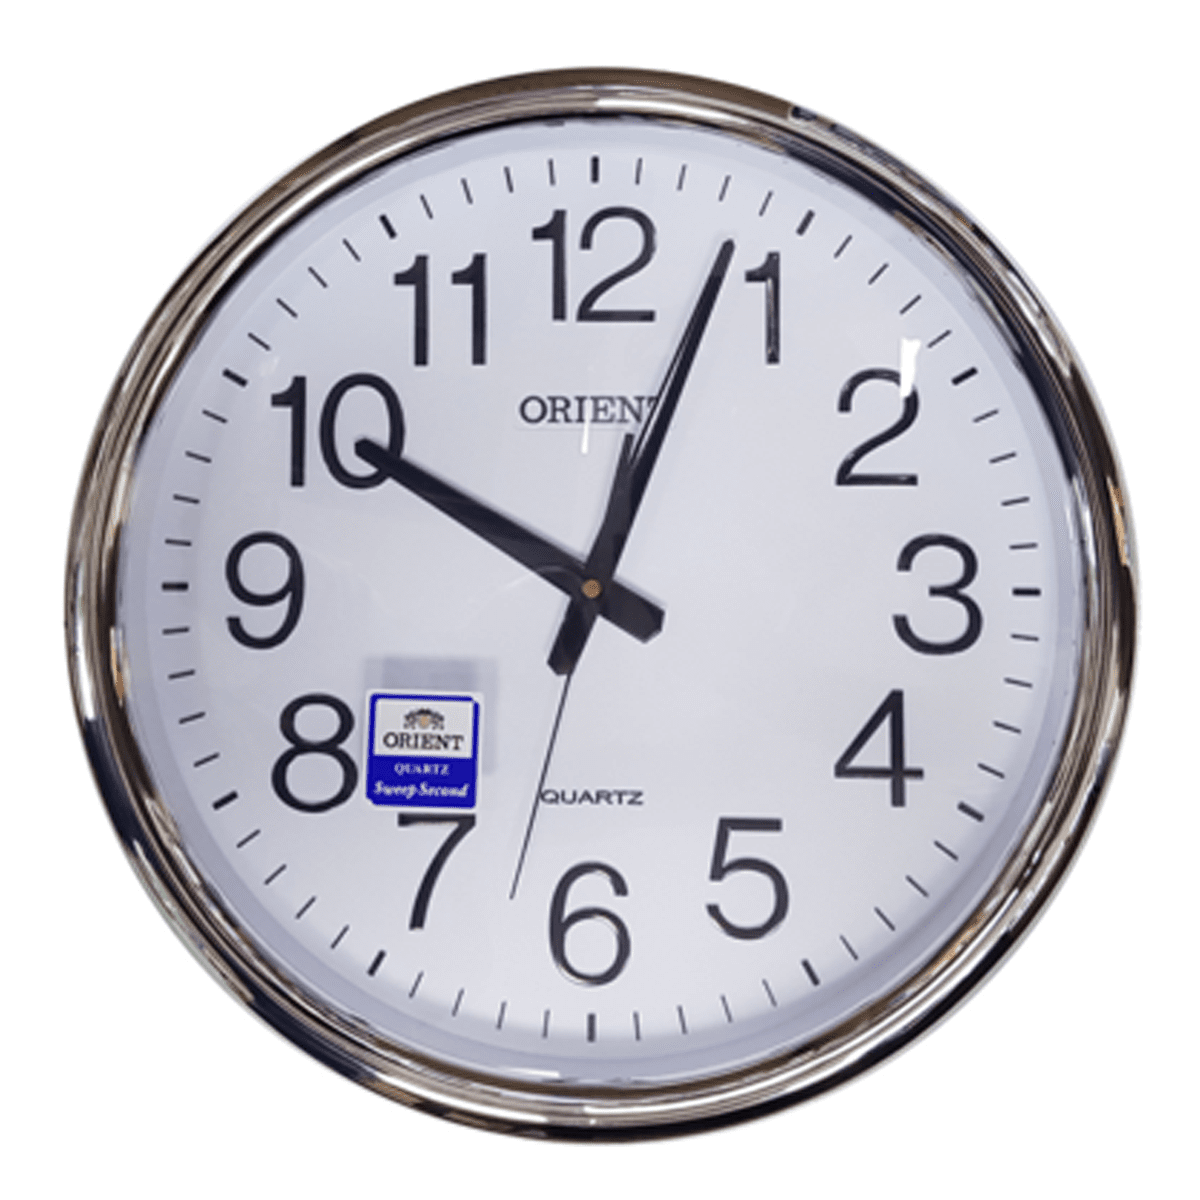 Orient Wall Clock - OT834